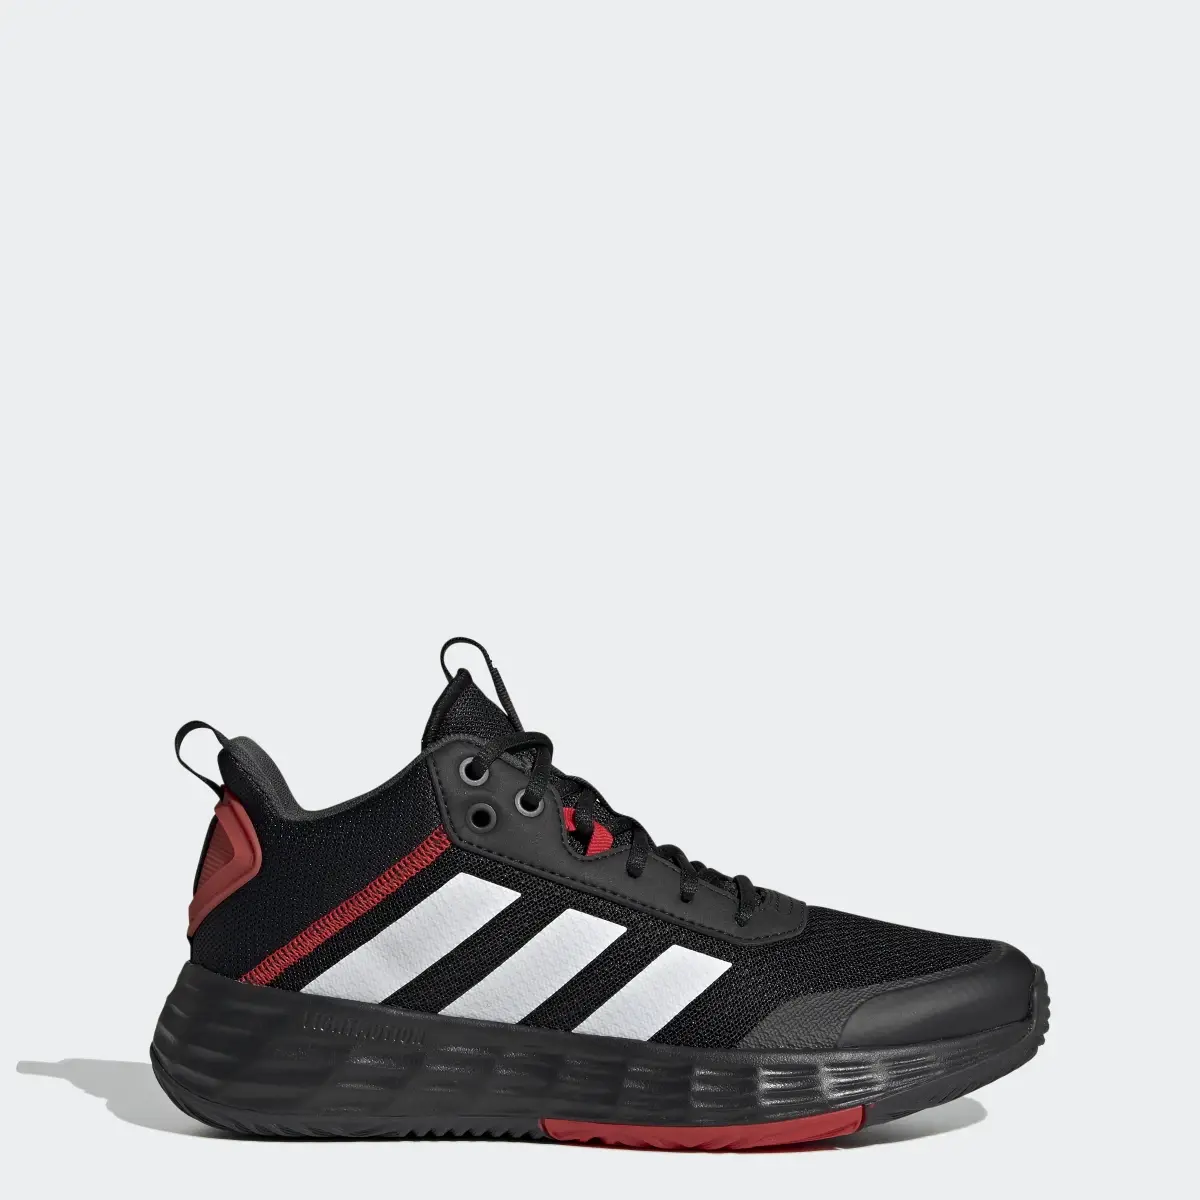 Adidas Ownthegame Ayakkabı. 1